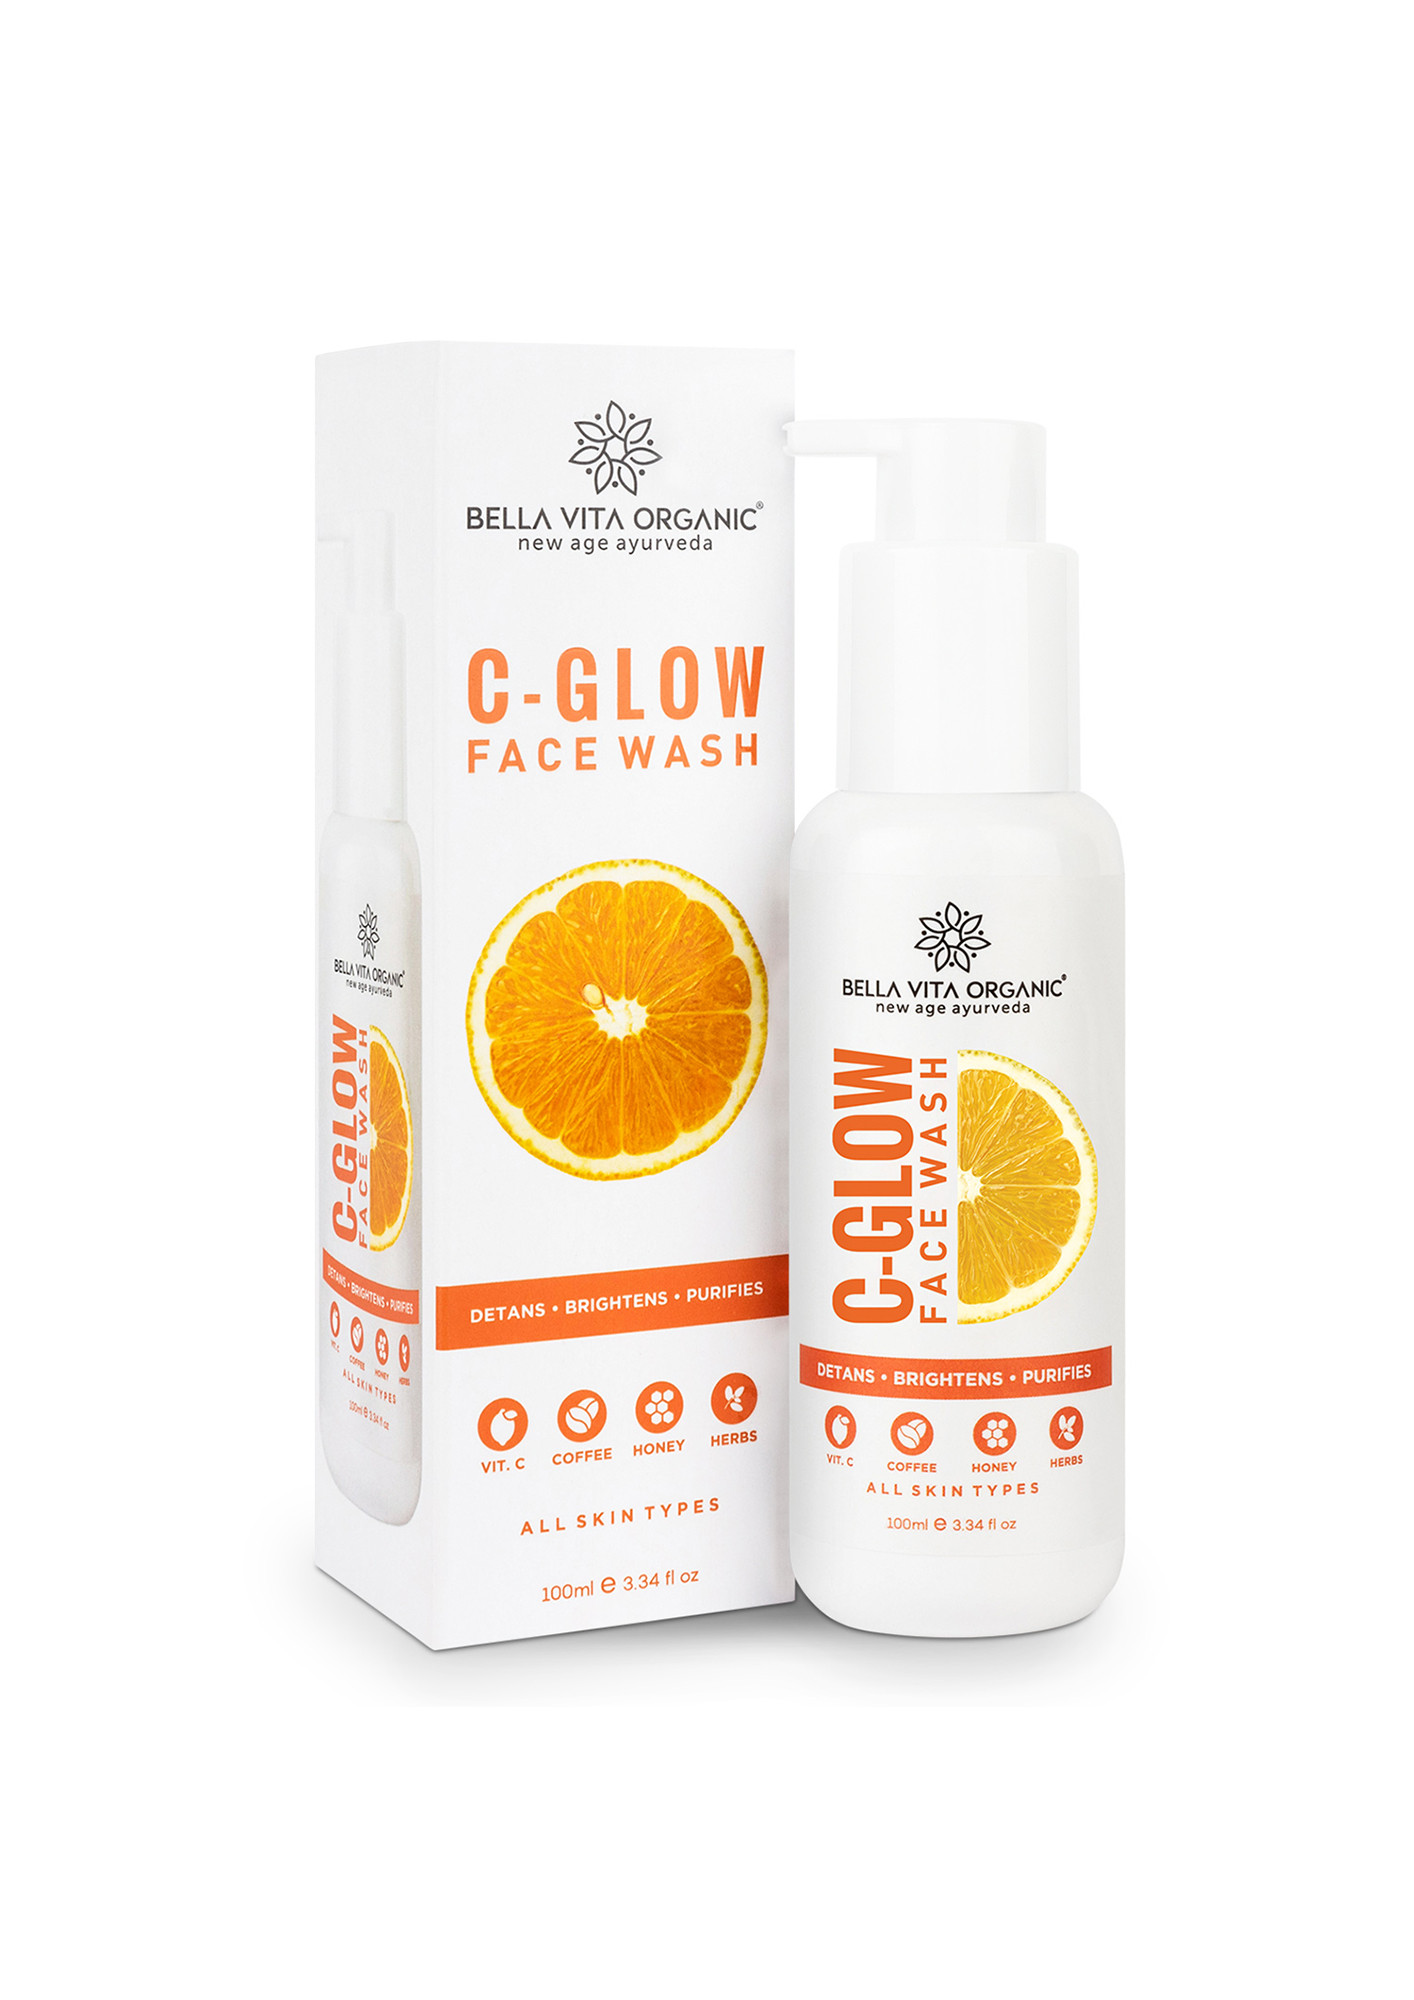 Ayurvedic Vitamin C & Orange Soap for Anti-Tan & Glow